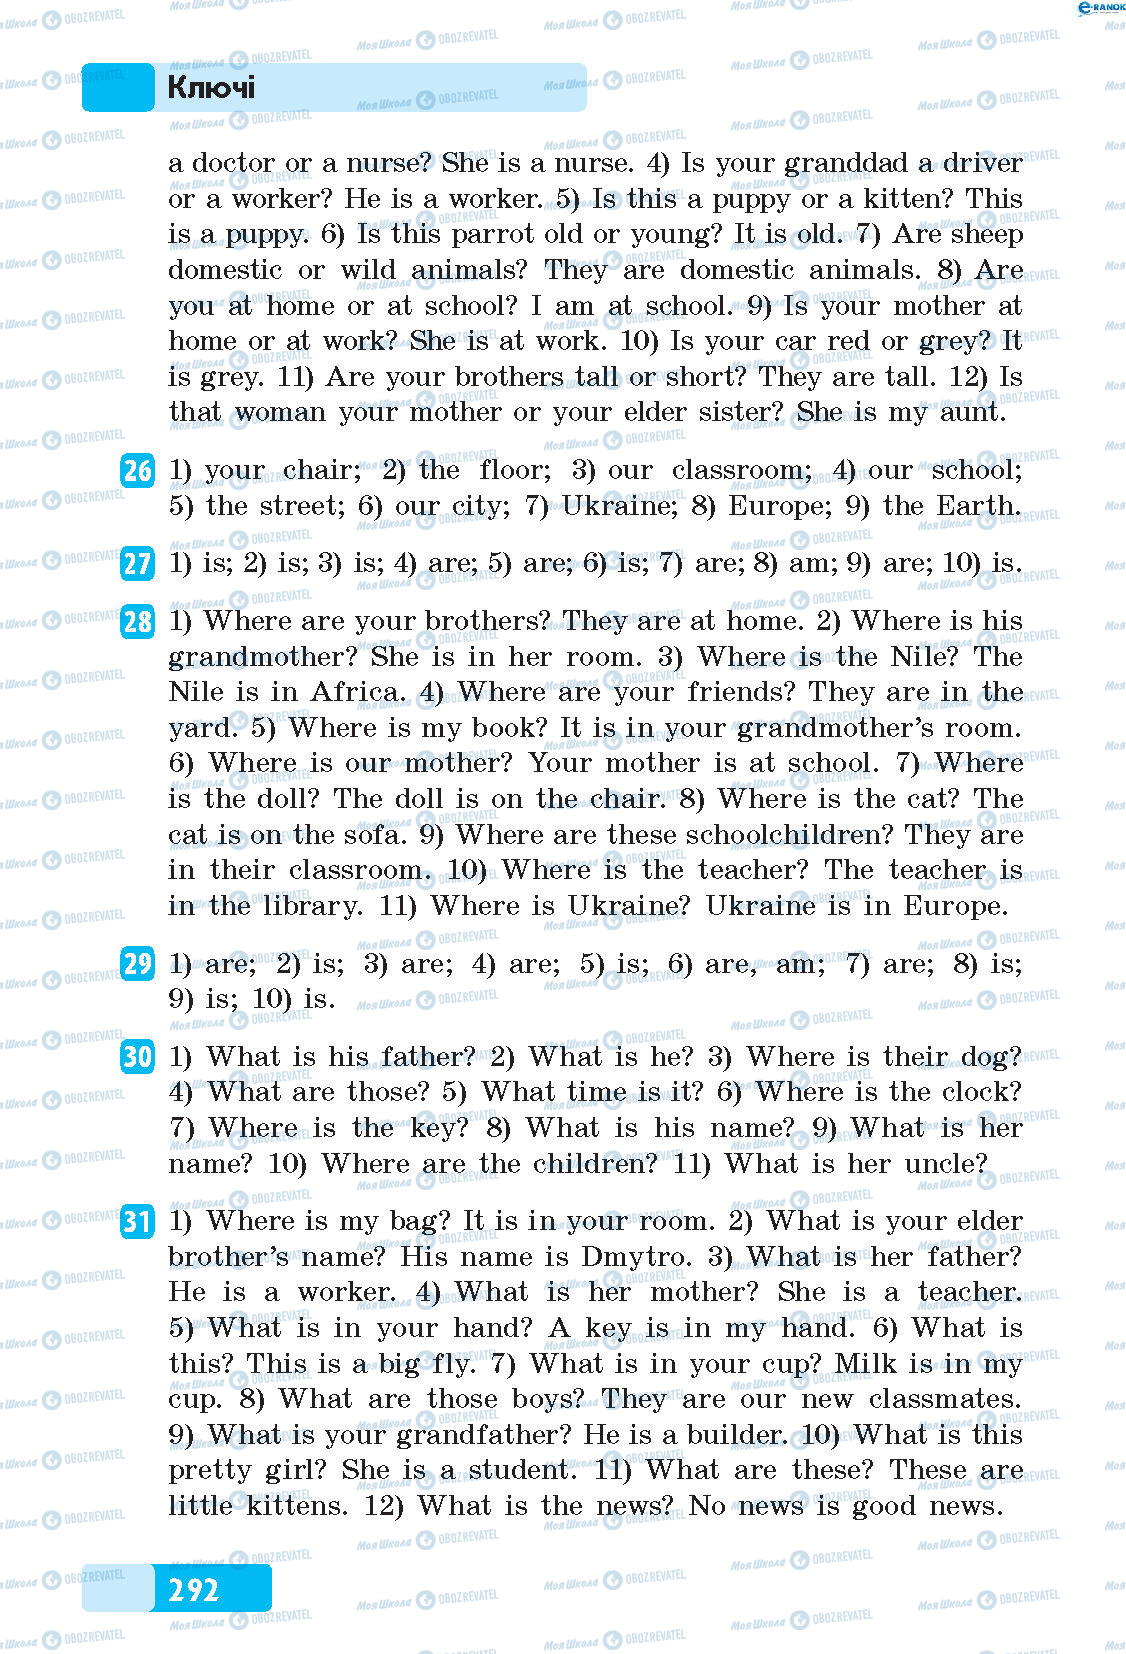 ГДЗ Английский язык 5 класс страница 26-31